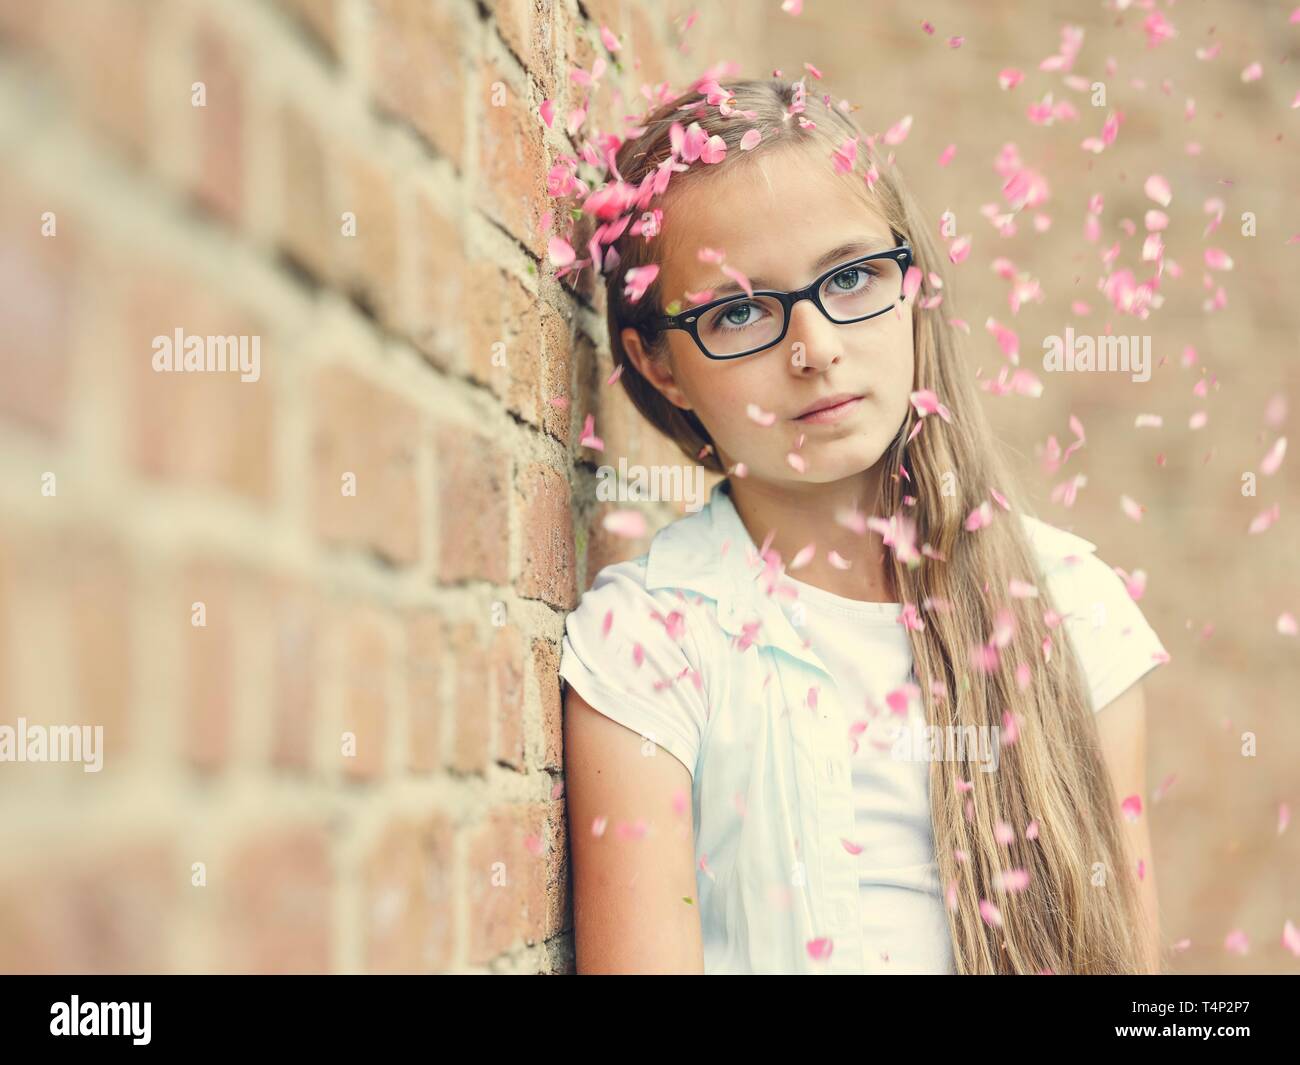 Mädchen mit Brille, Teenager, 12 Jahre, lehnt sich gegen eine Wand, Regen von Blumen, Porträt, Deutschland Stockfoto